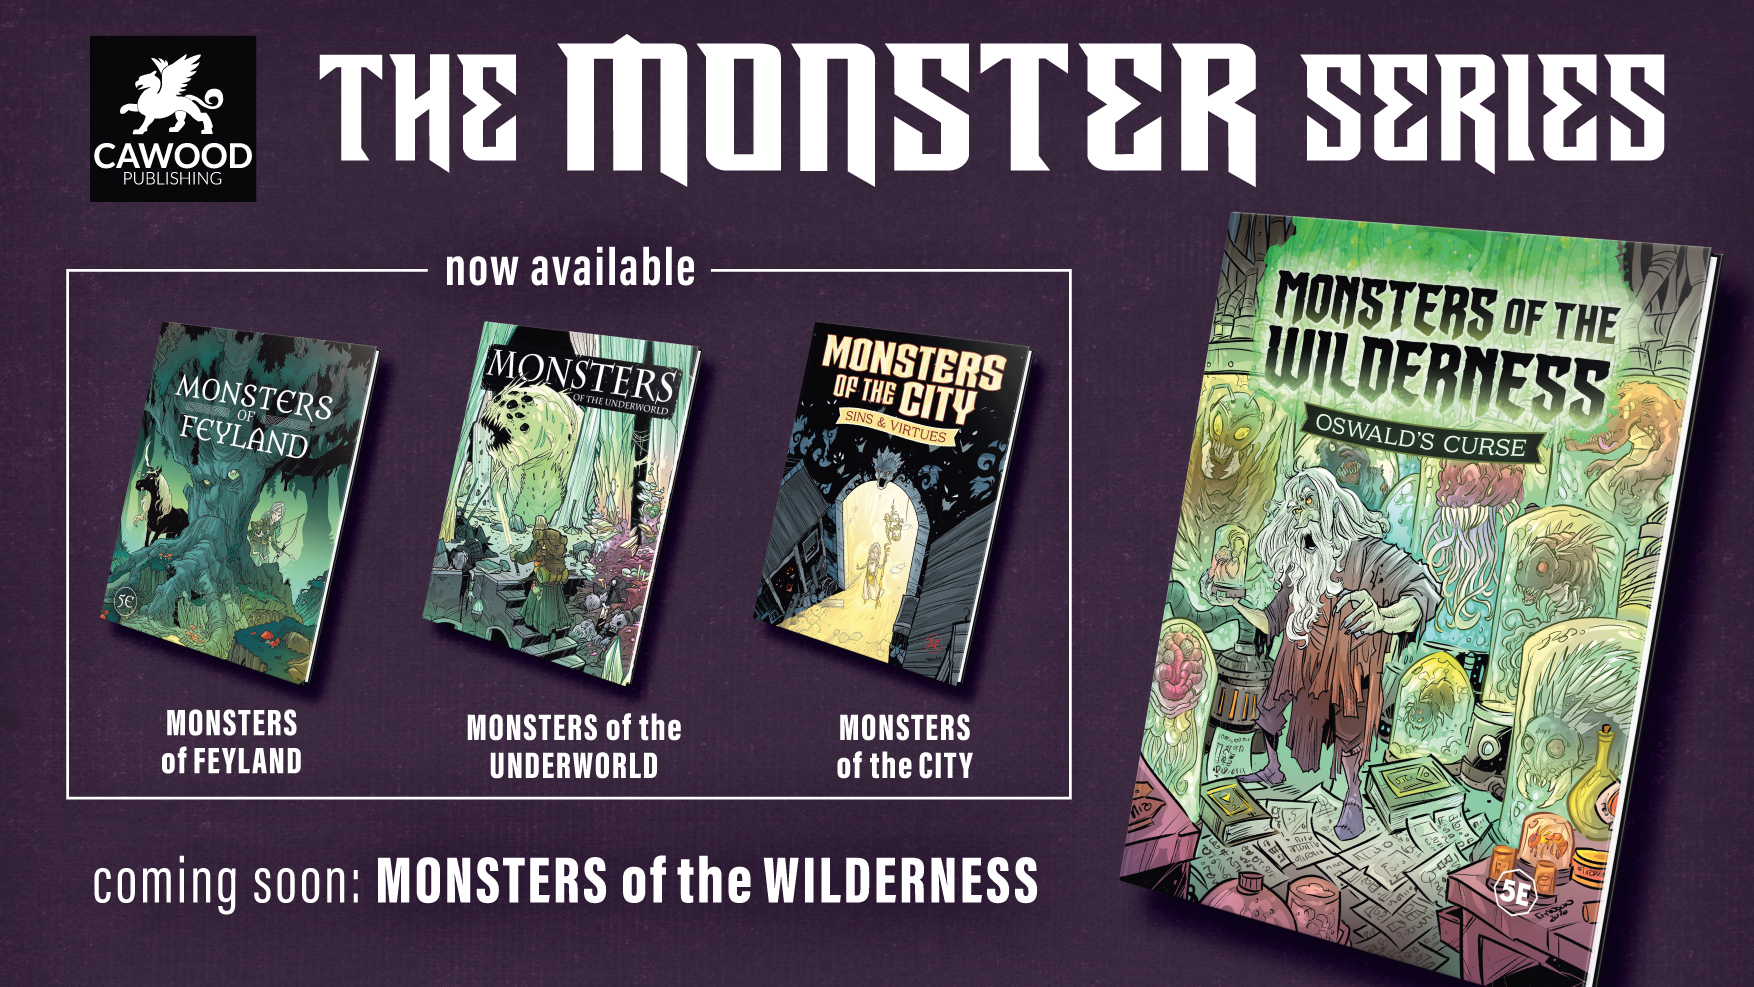 MOTW-The-Monster-Series-promo.jpg